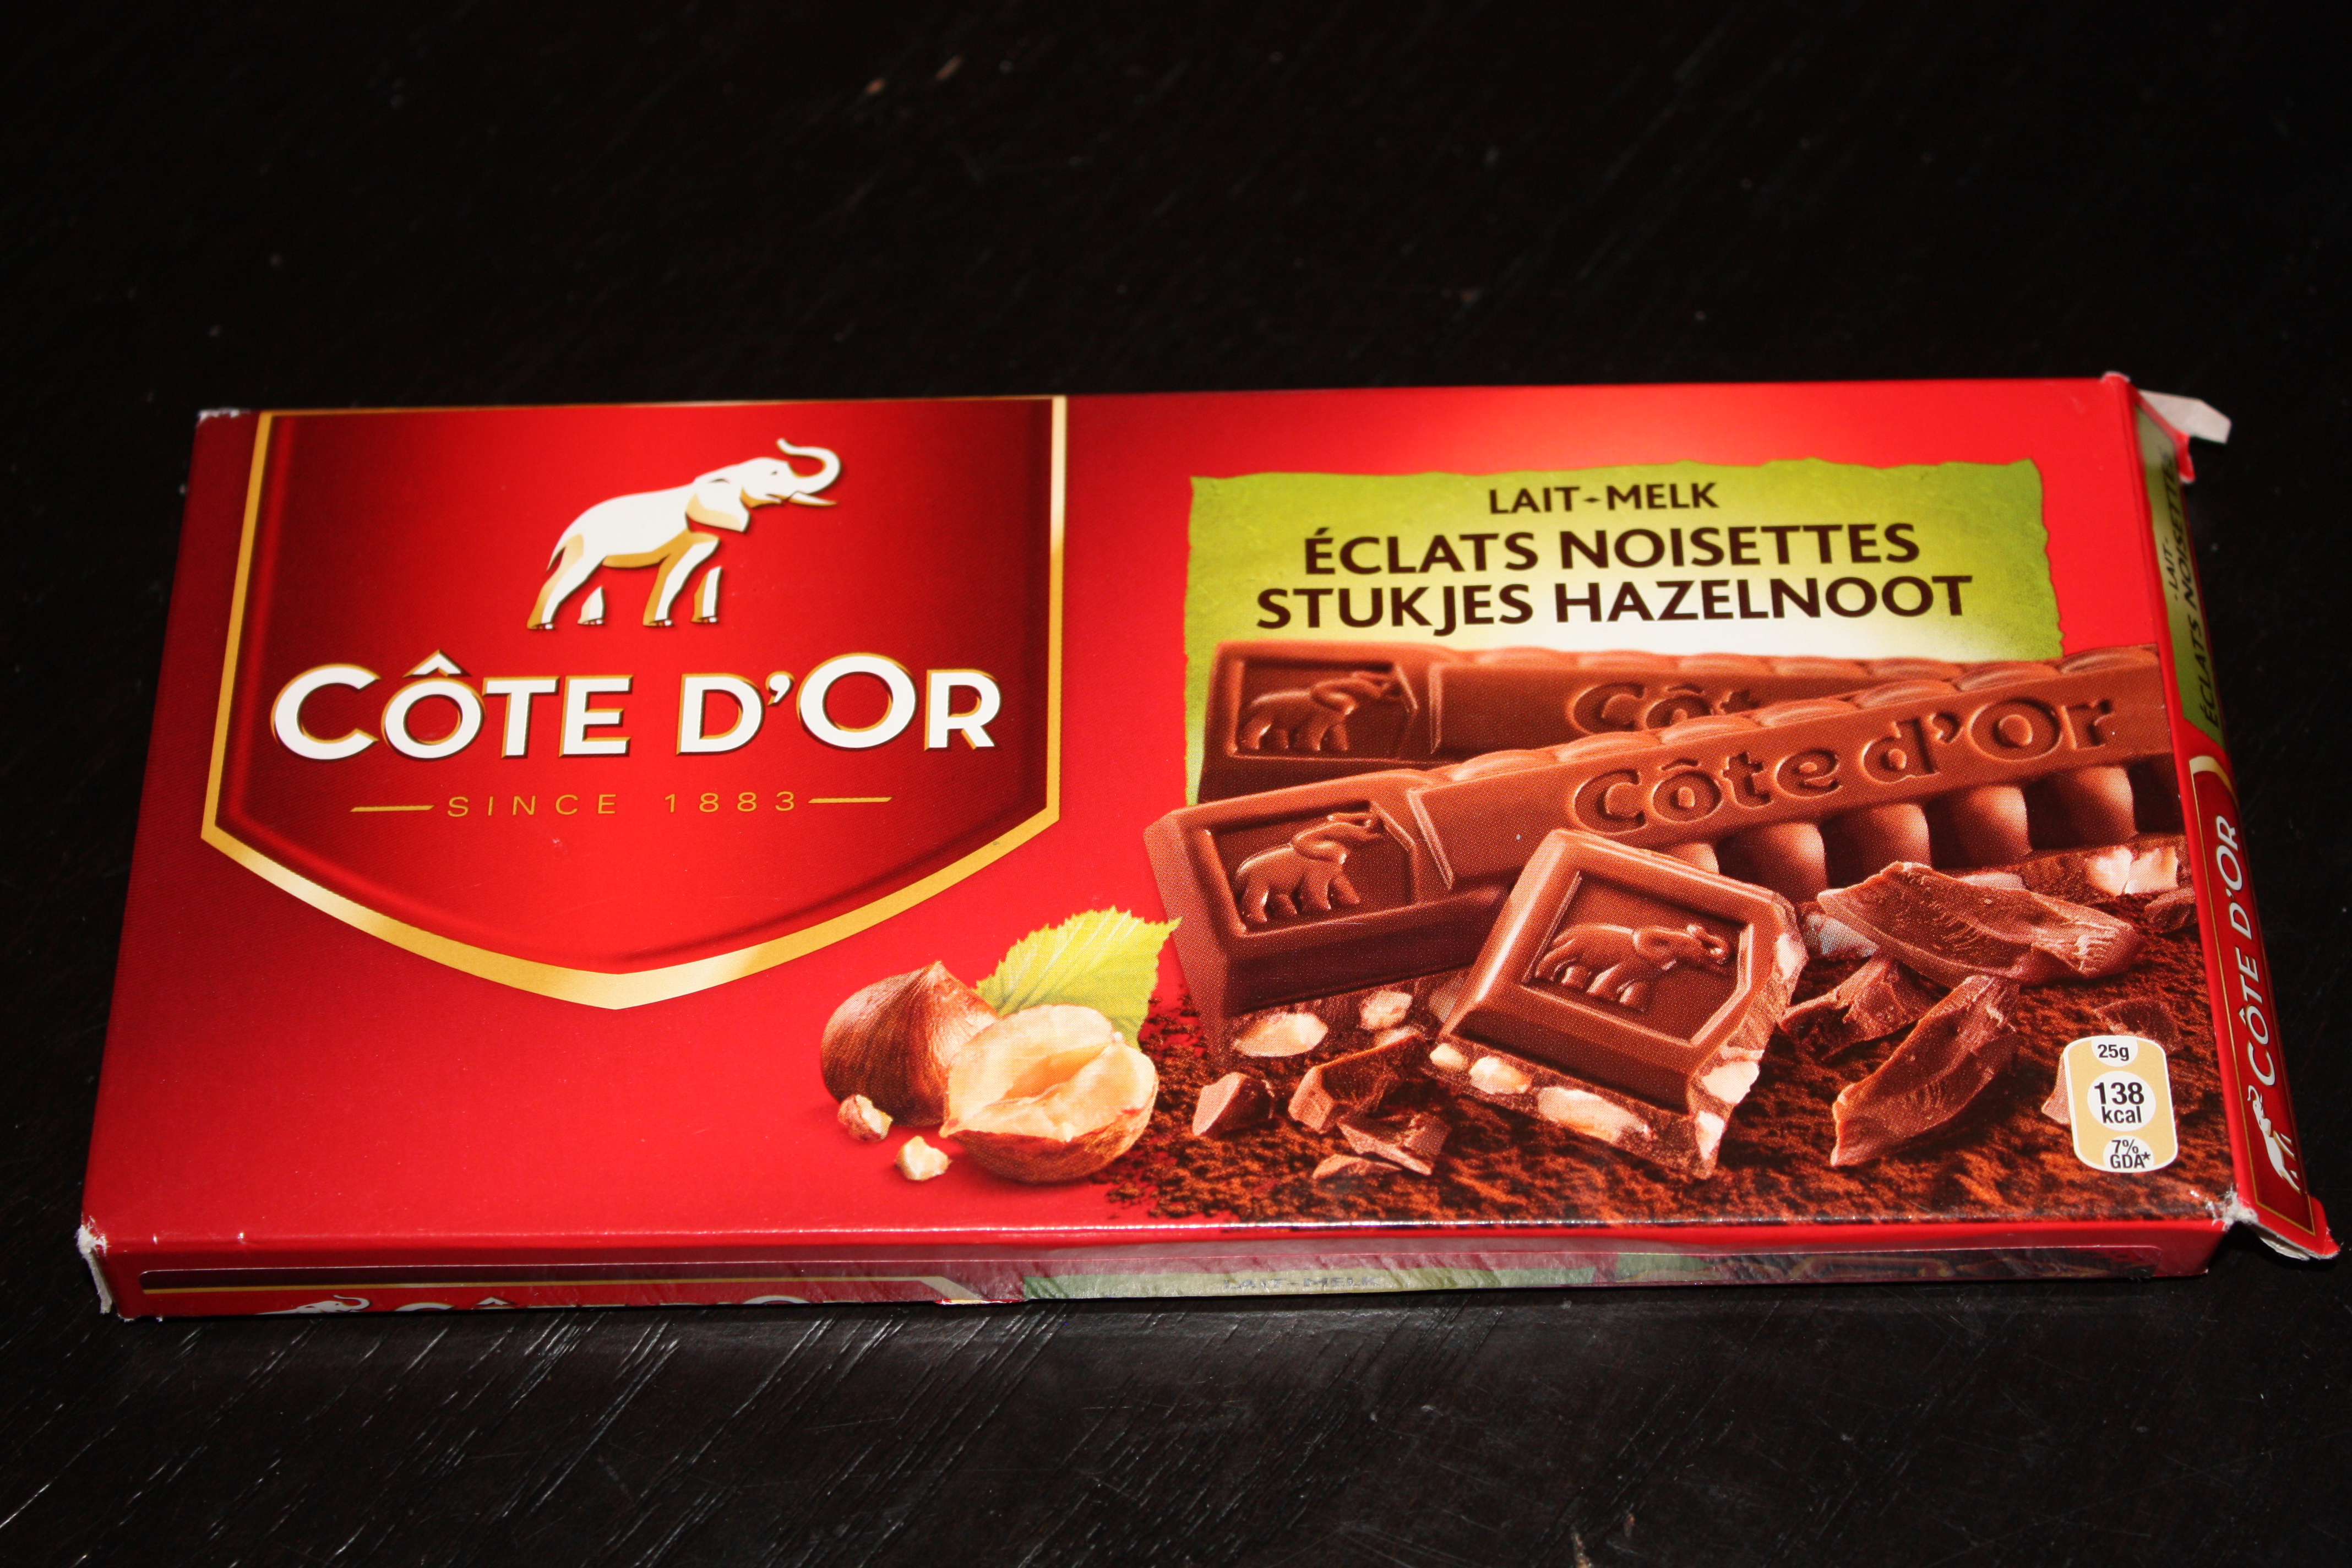 10 thương hiệu chocolate Bỉ - Cote d'Or